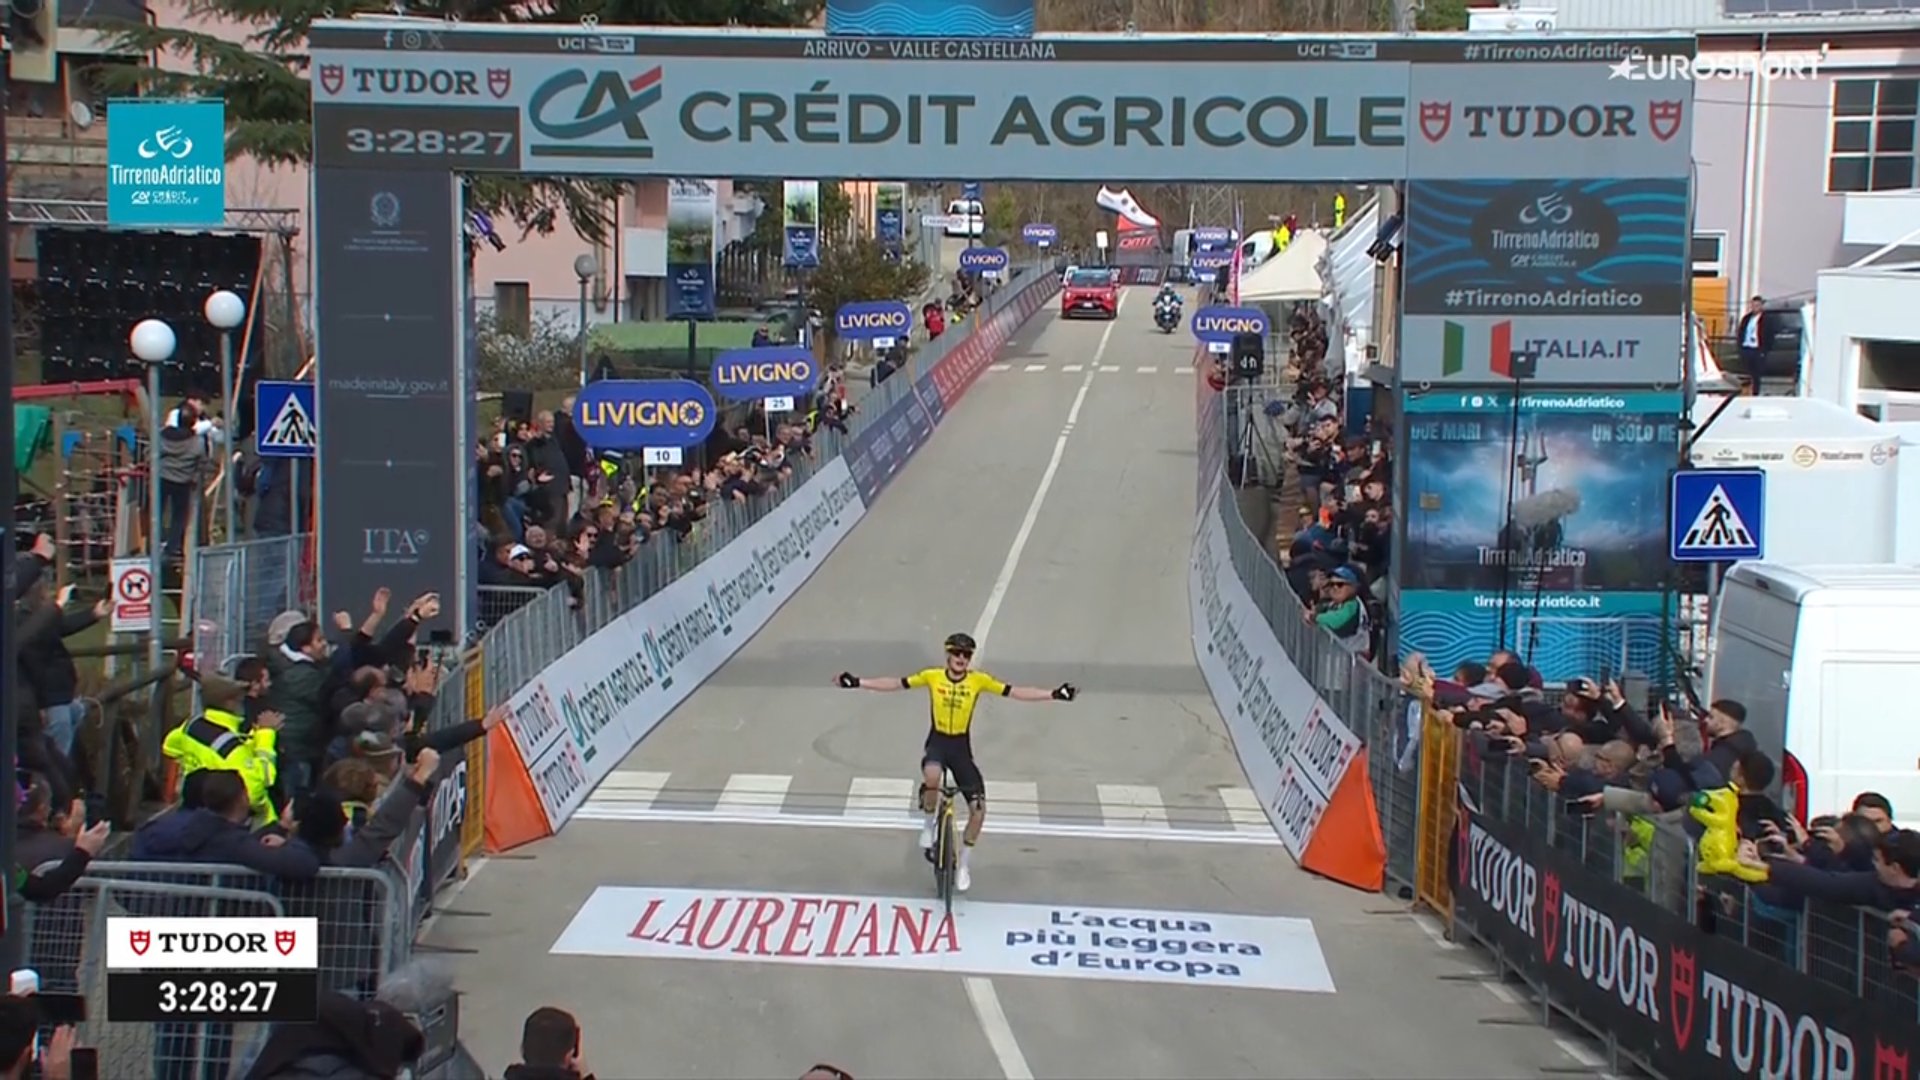 Classement de la 5ème étape de Tirreno-Adriatico, remportée par Jonas Vingegaard.